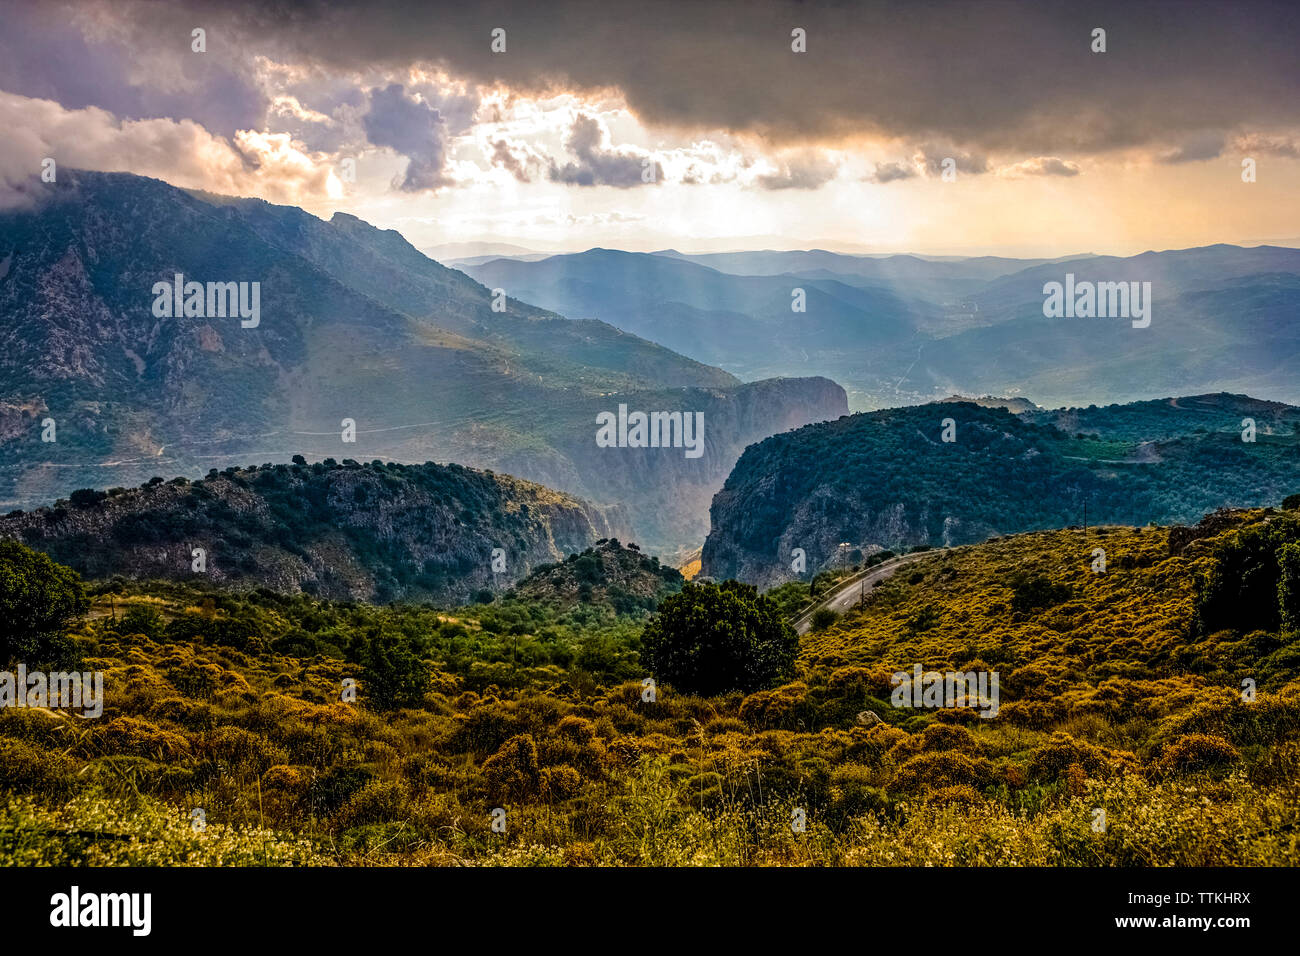 Grèce, Crete, vue panoramique depuis le plateau de Lassithi. Banque D'Images